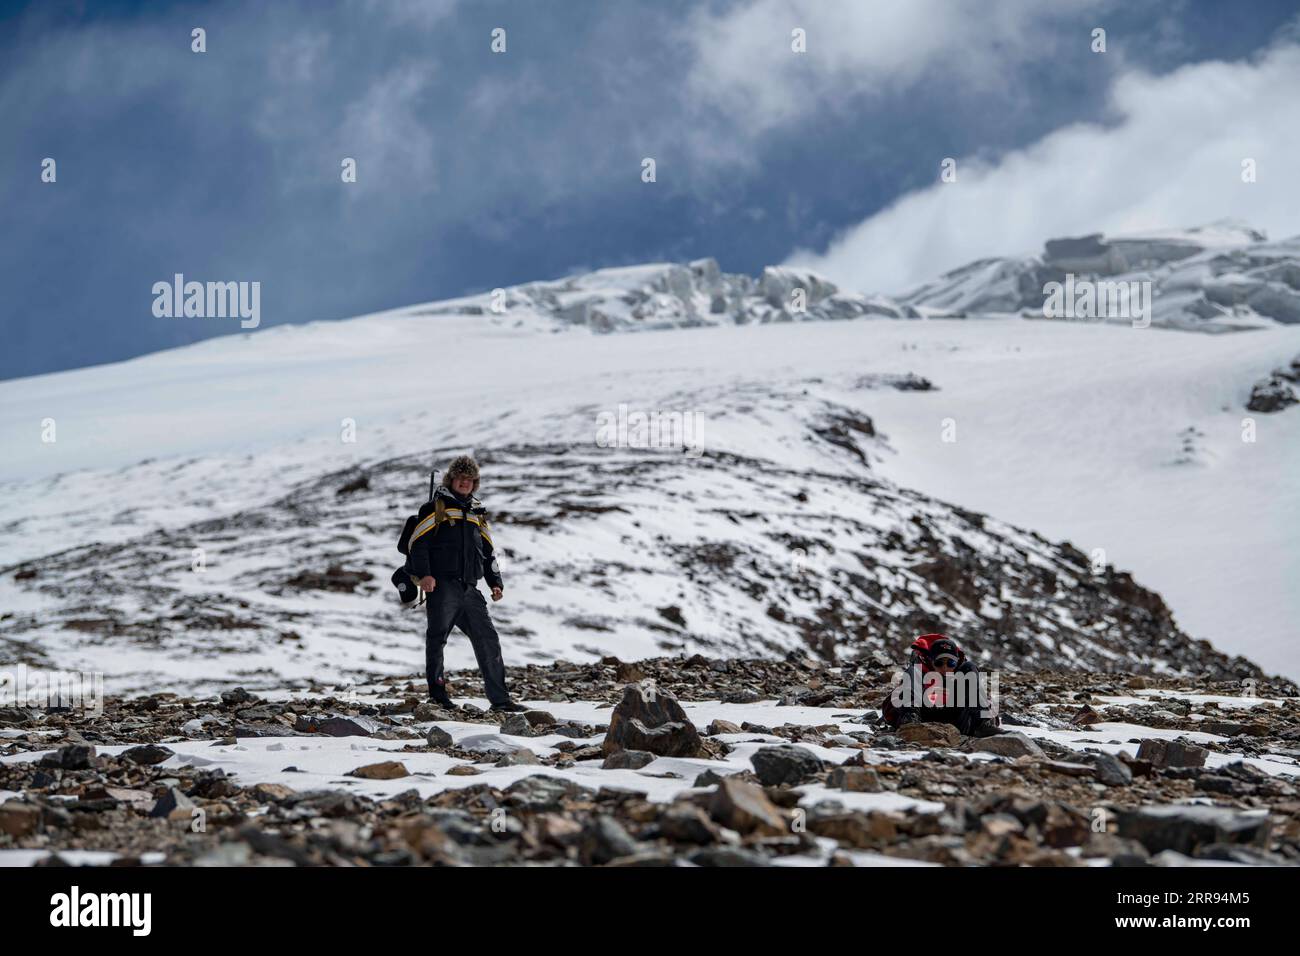 210528 -- URUMQI, 28 maggio 2021 -- Bikmirza Turdil L riposa mentre prende parte ad un addestramento mirato sulla Muztagh Ata nella regione autonoma di Xinjiang Uygur della Cina nordoccidentale, 15 maggio 2021. Bikmirza, un allevatore di 24 anni, nacque e crebbe ai piedi del Muztagh Ata, un picco con un'altitudine di oltre 7.500 metri, nella regione autonoma di Uygur dello Xinjiang Pamir in Cina. Ha iniziato a lavorare come guida aiutando gli scalatori a trasportare attrezzature e provviste all'età di 18 anni. Scalare il Muztagh Ata, un simbolo di coraggio, è anche considerato come la cerimonia di raggiungimento della maggiore età per i giovani locali. In Foto Stock